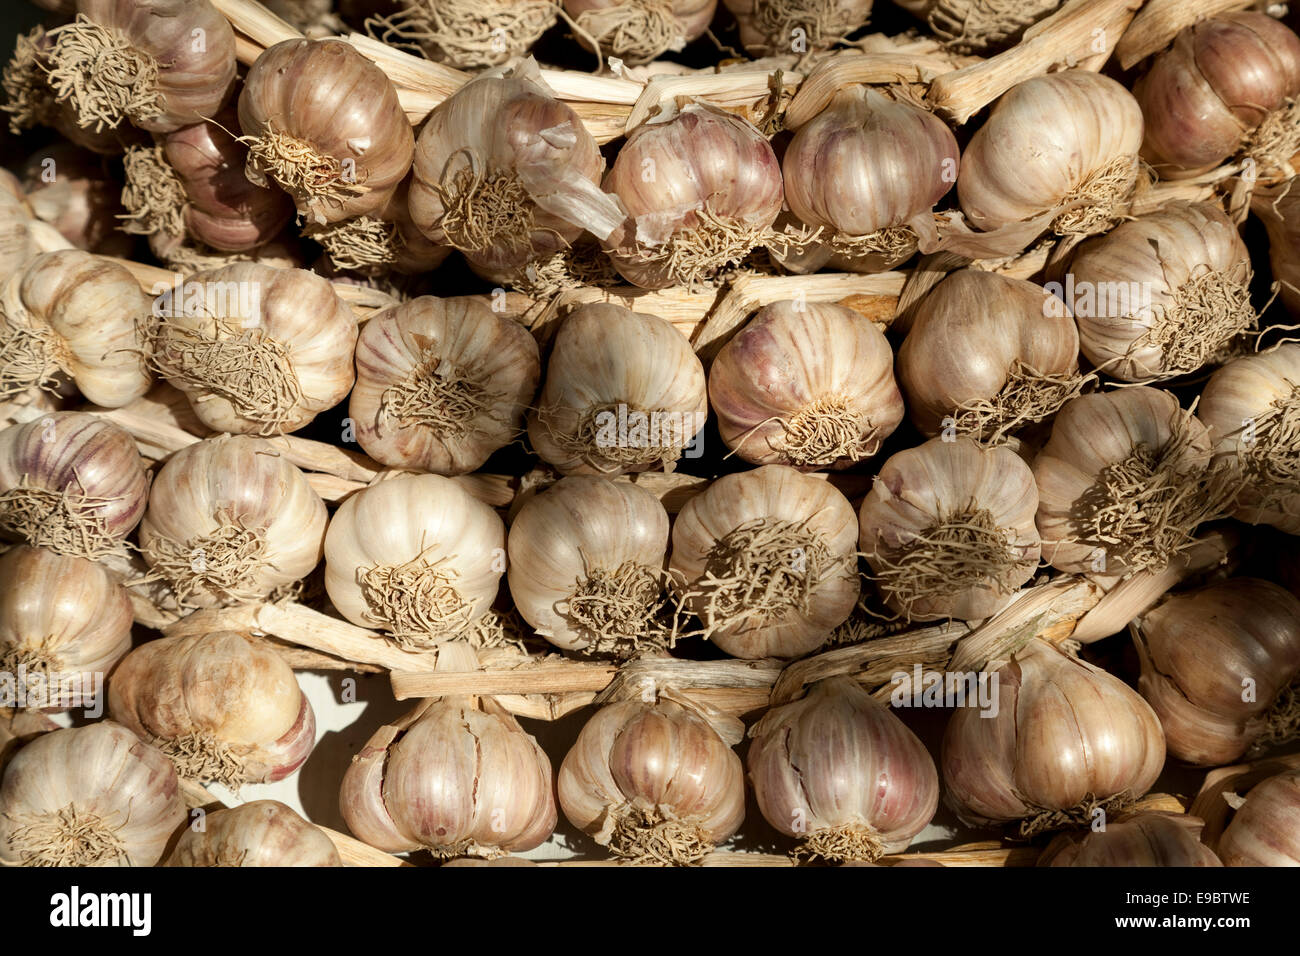 Polish garlic braided in a braid Stock Photo